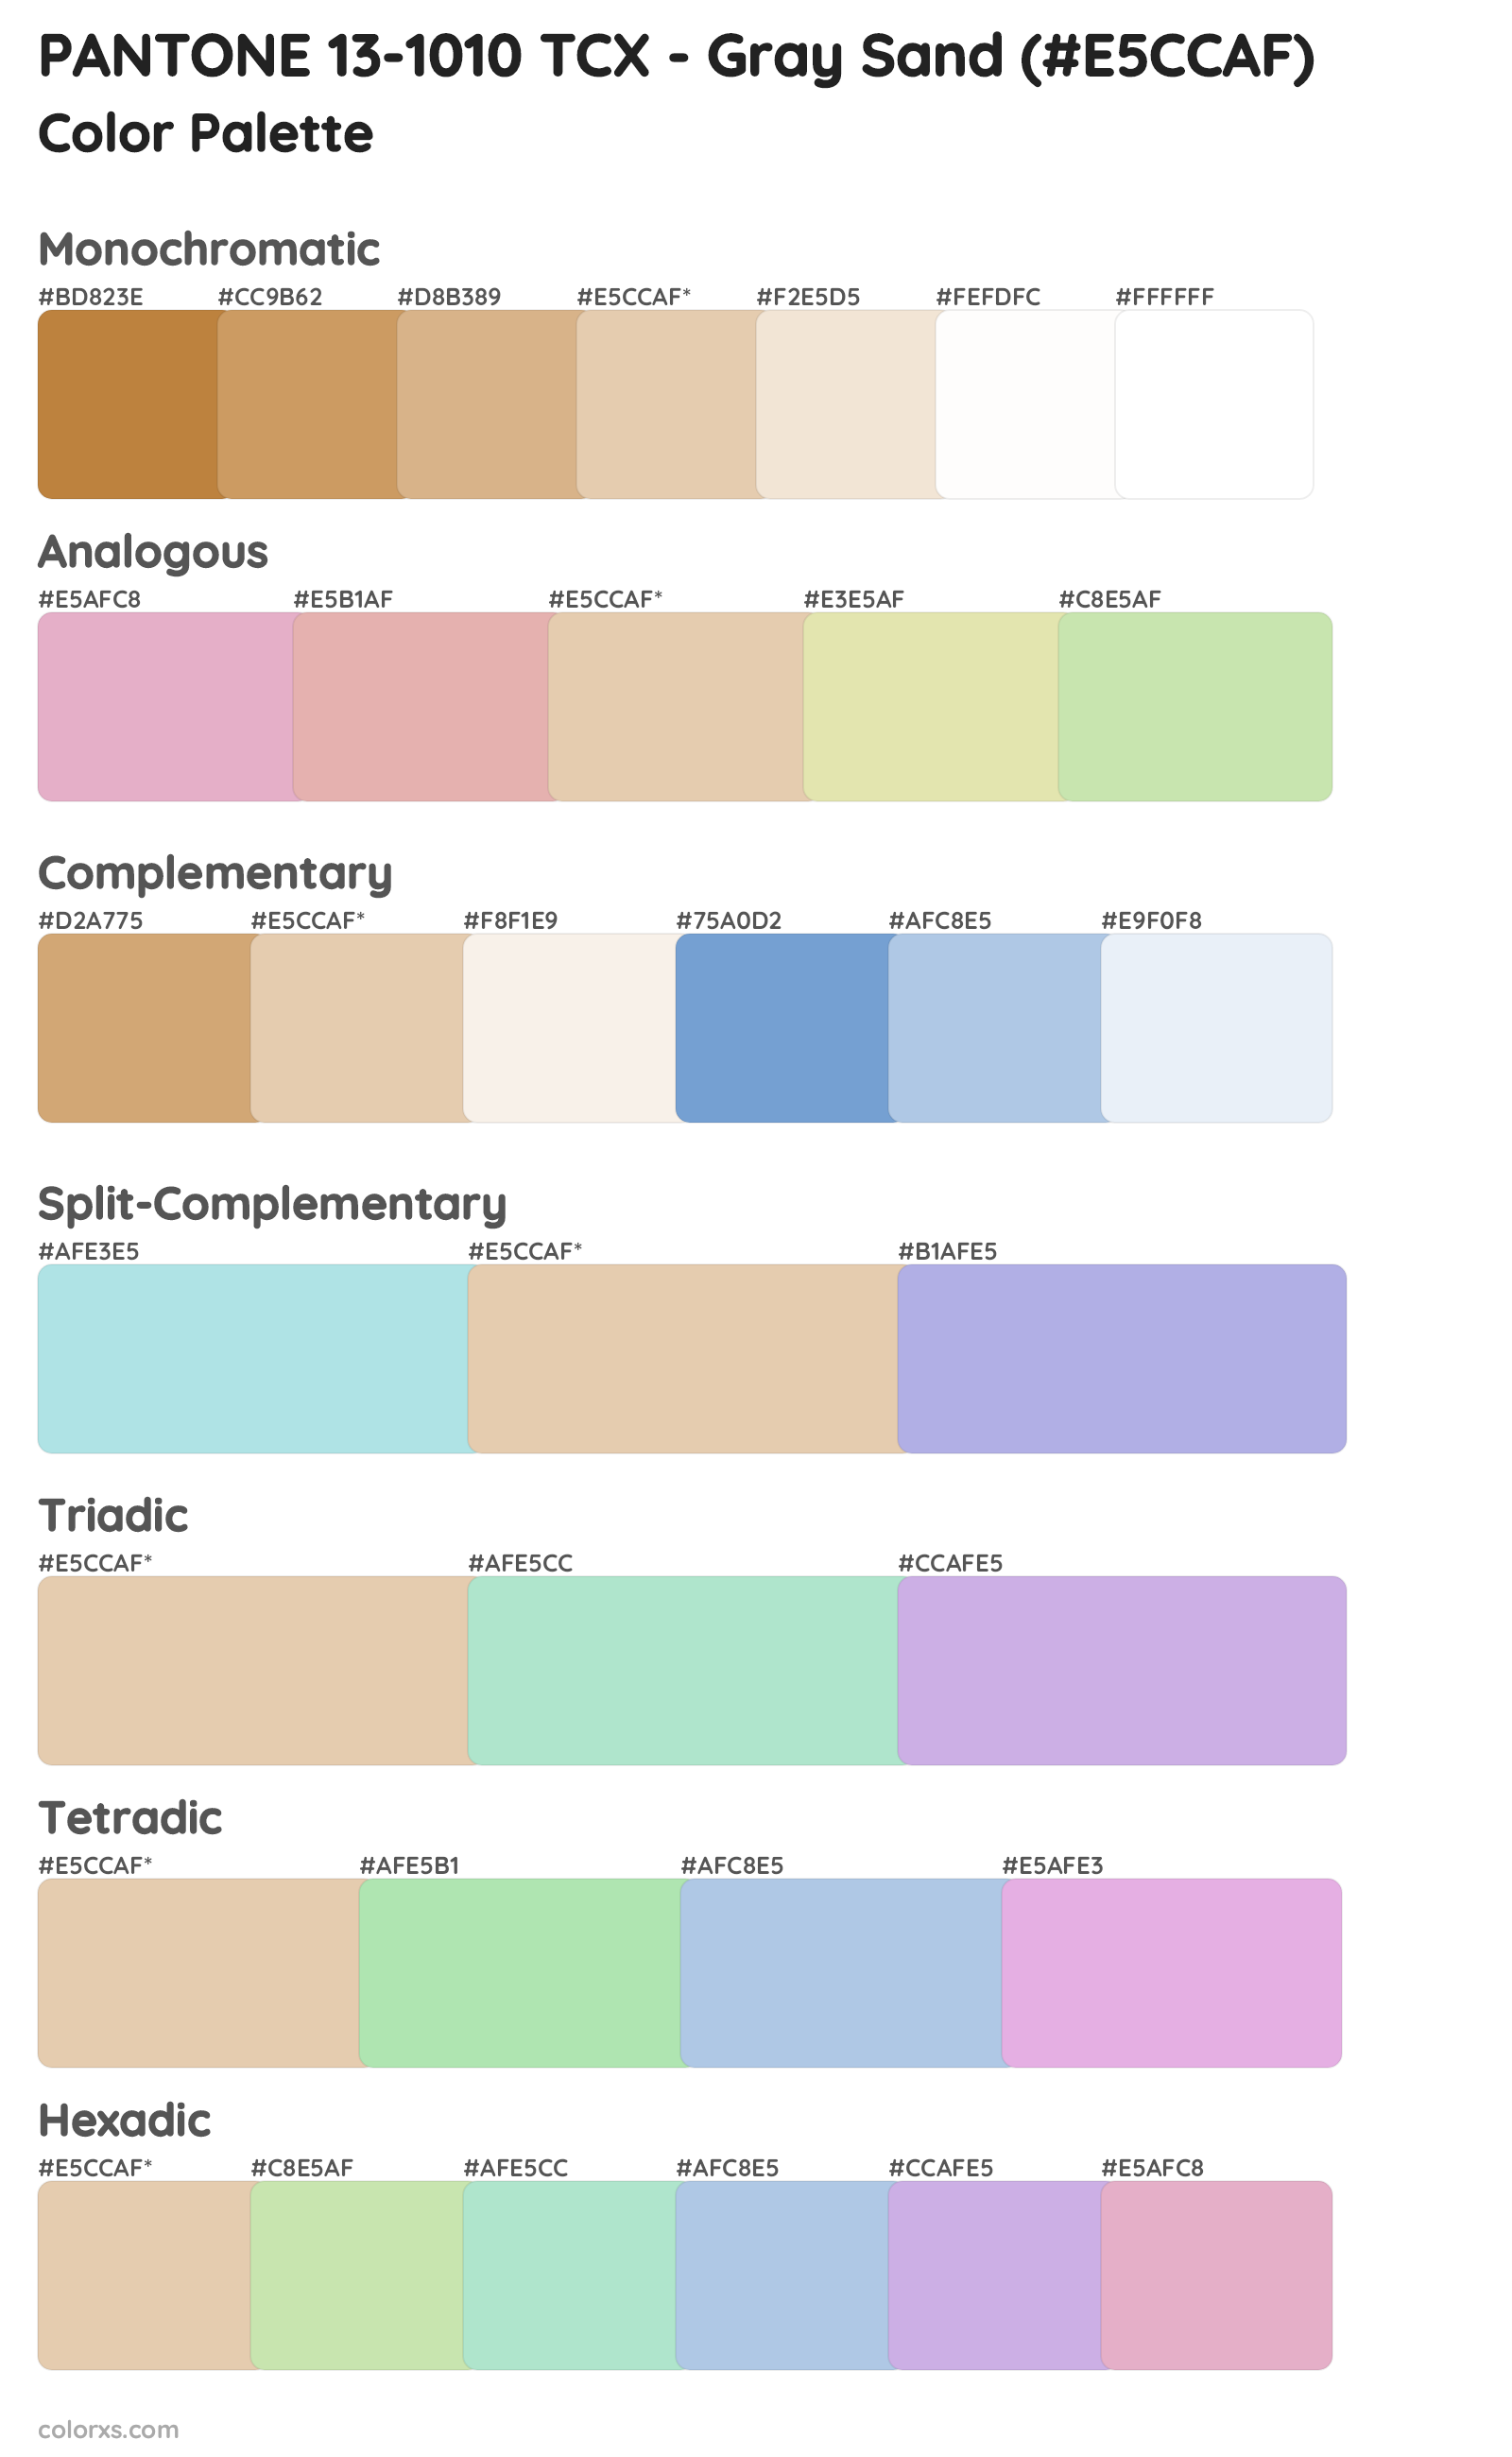 PANTONE 13-1010 TCX - Gray Sand Color Scheme Palettes